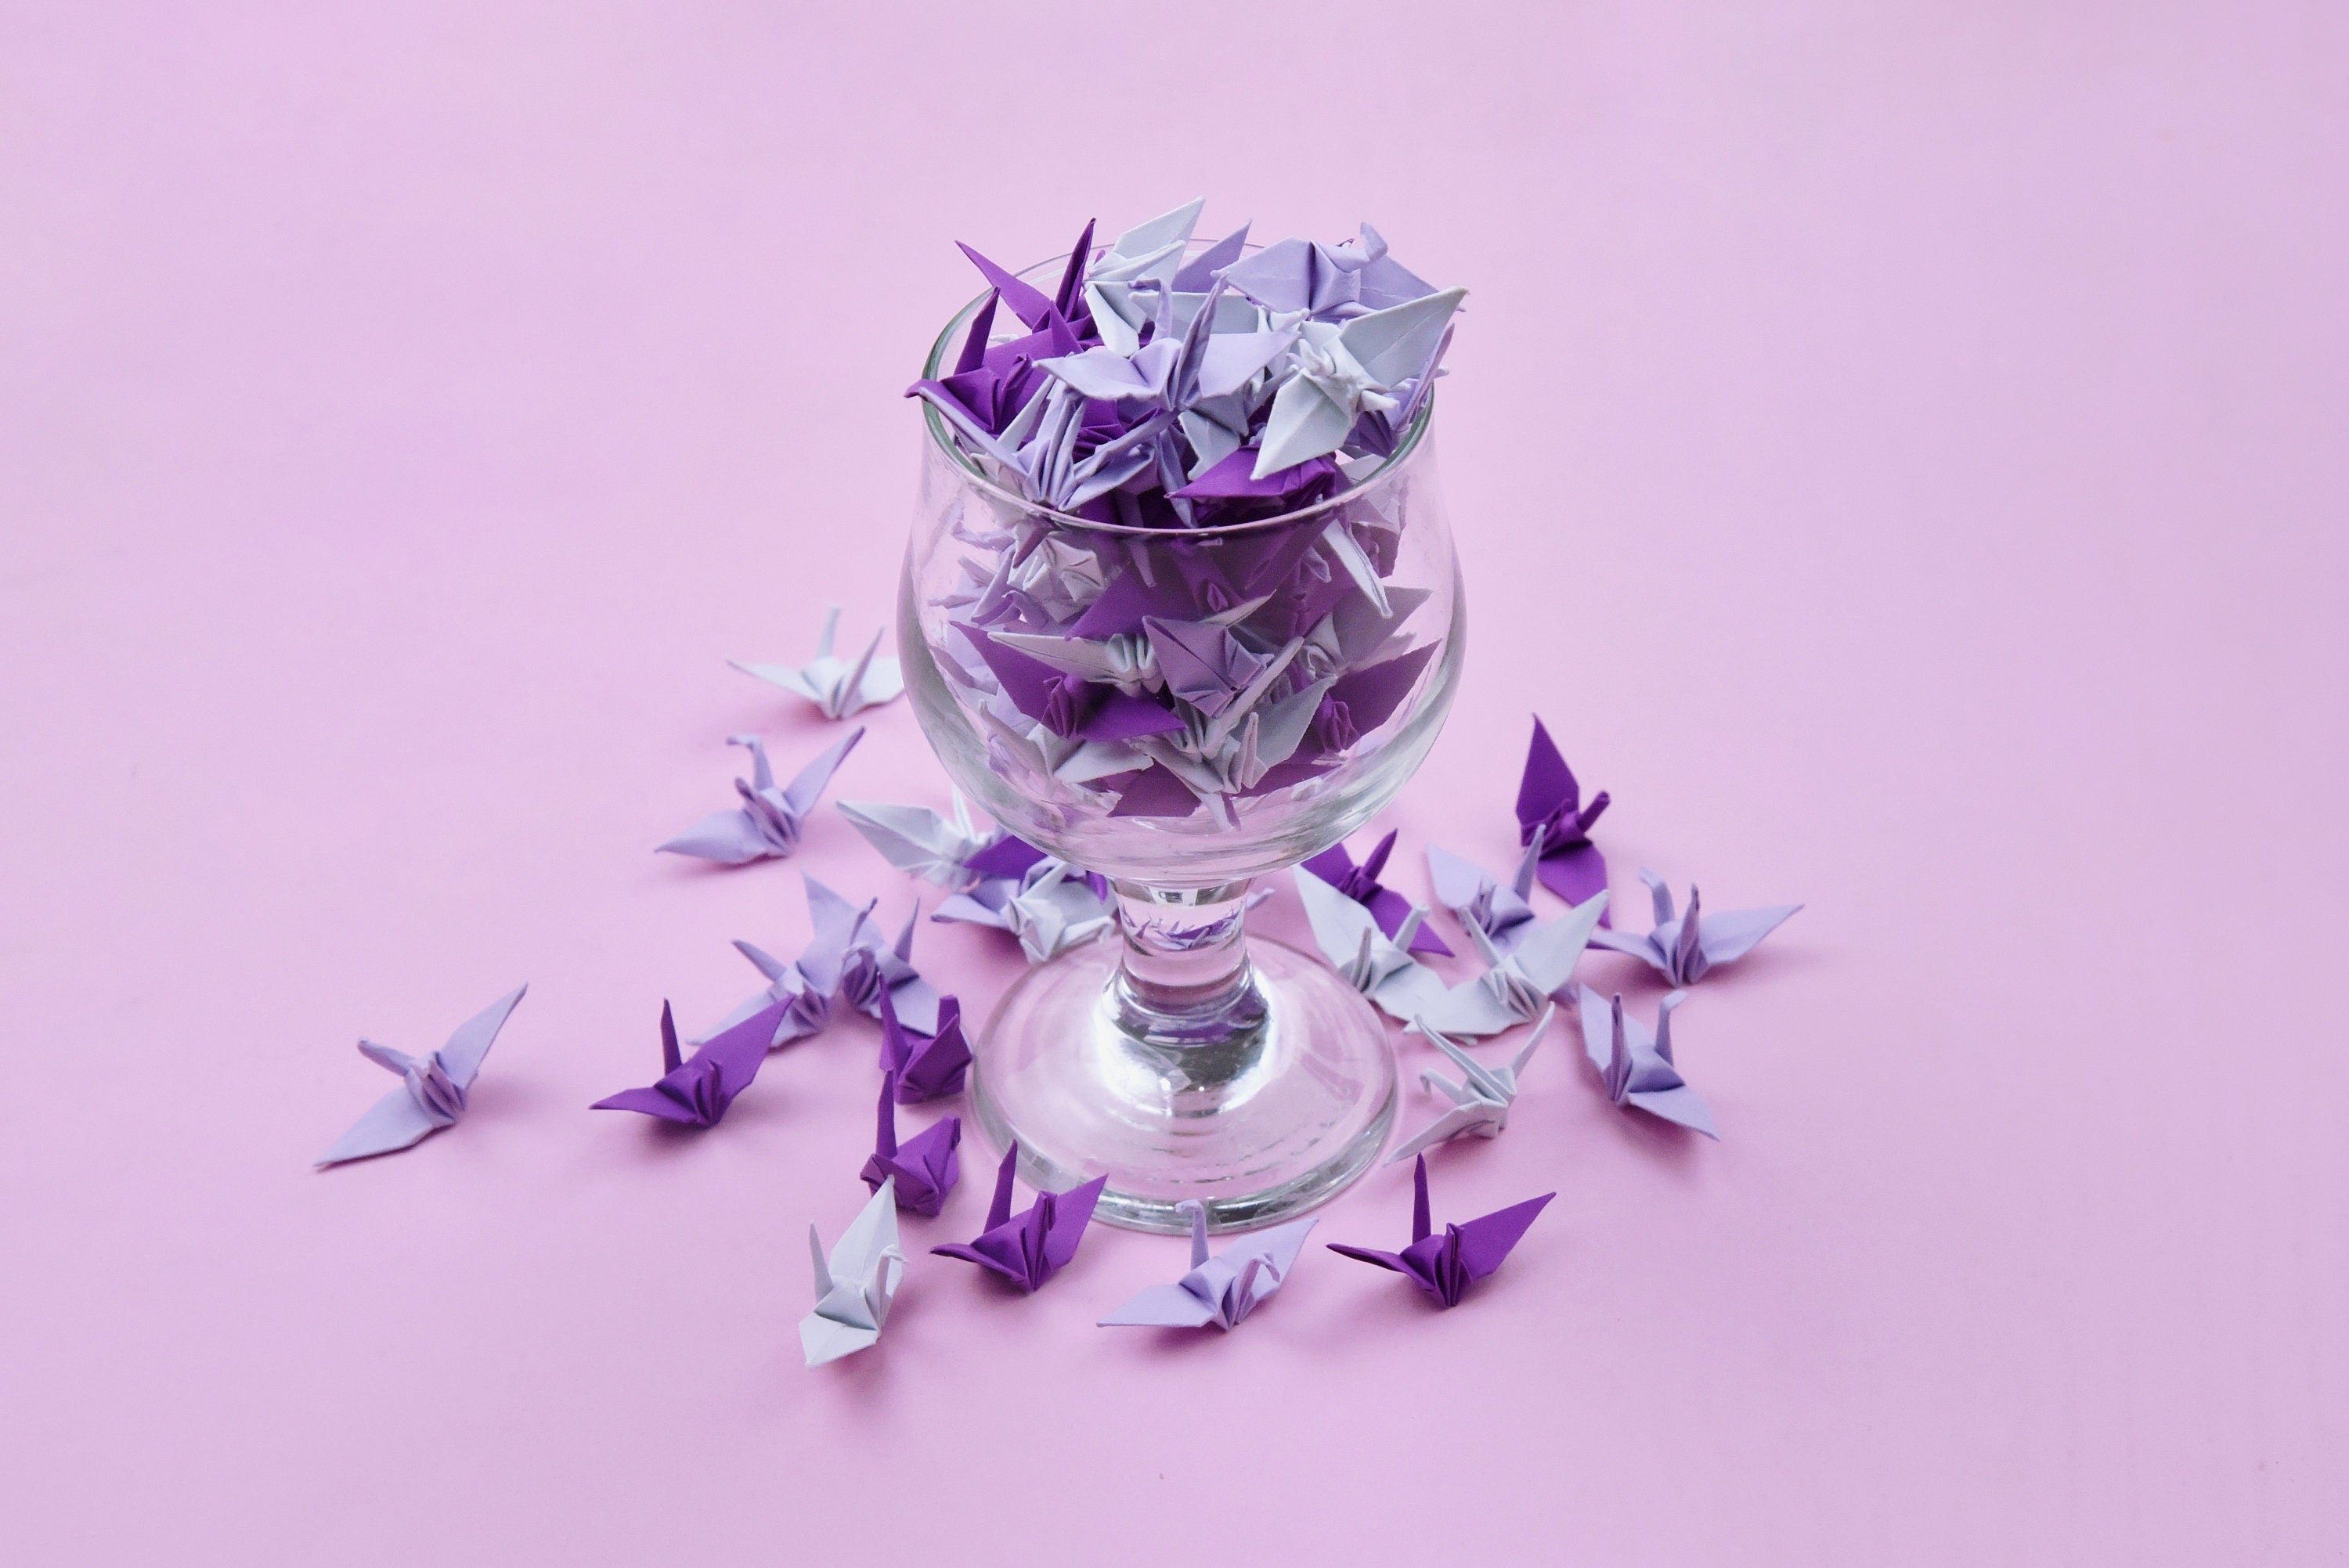 100 Origami Paper Crane Purple Shade Origami Cranes Pre Made Small 1.5x1.5 inches for Wedding Decor, Anniversary Gift, Valentine